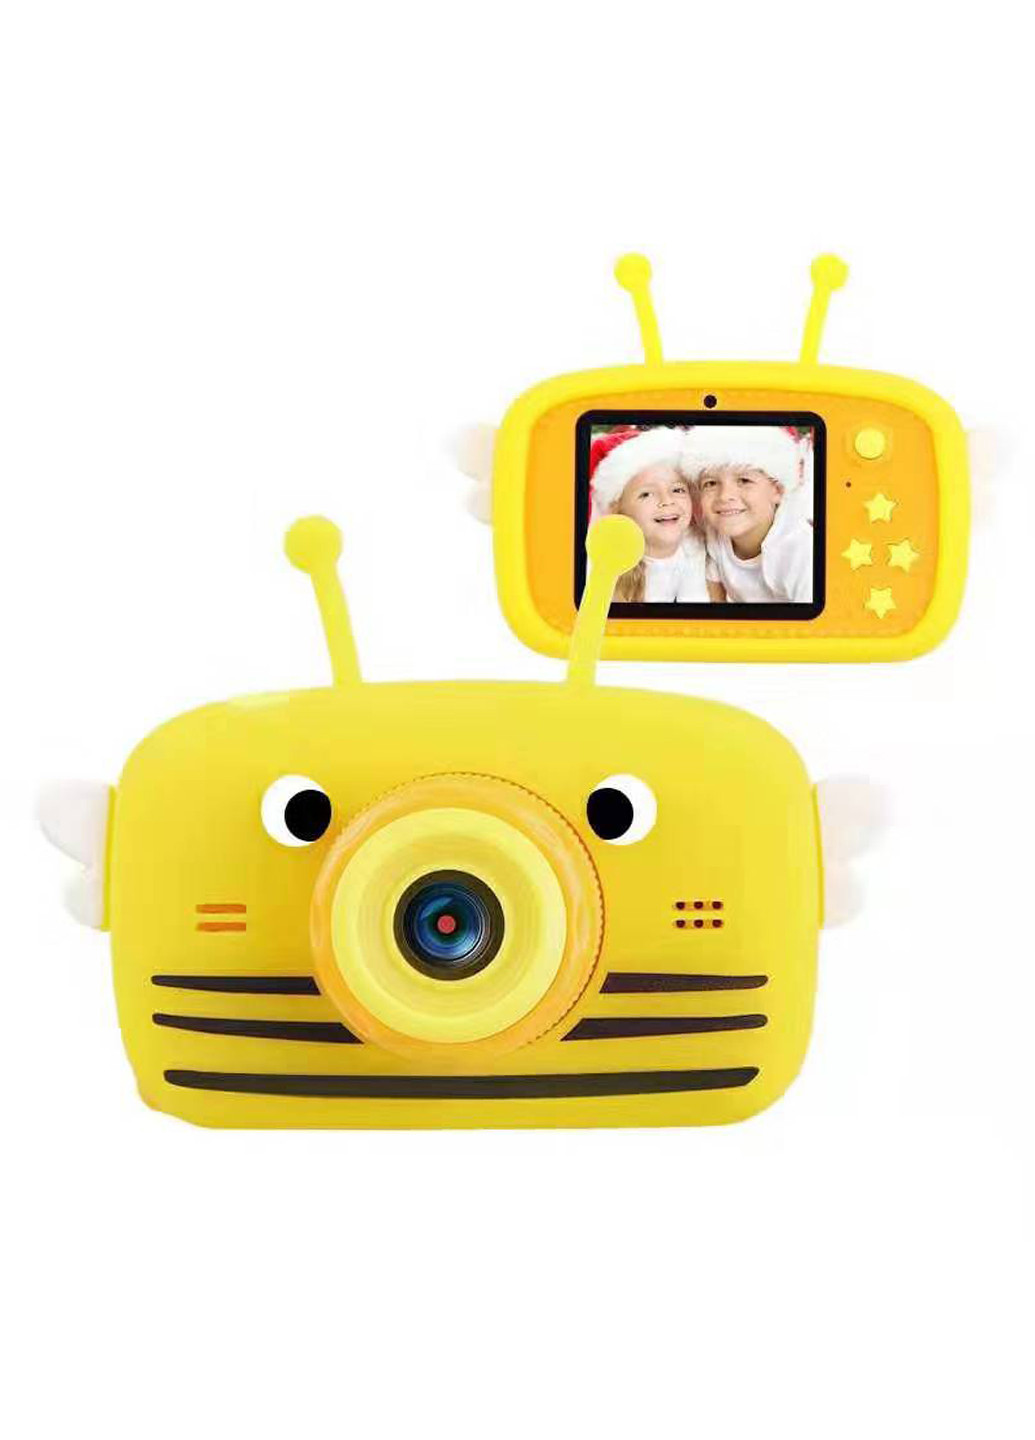 Цифровой детский фотоаппарат KVR-100 Bee Dual Lens оранжевый () XoKo kvr-100-or (171738975)